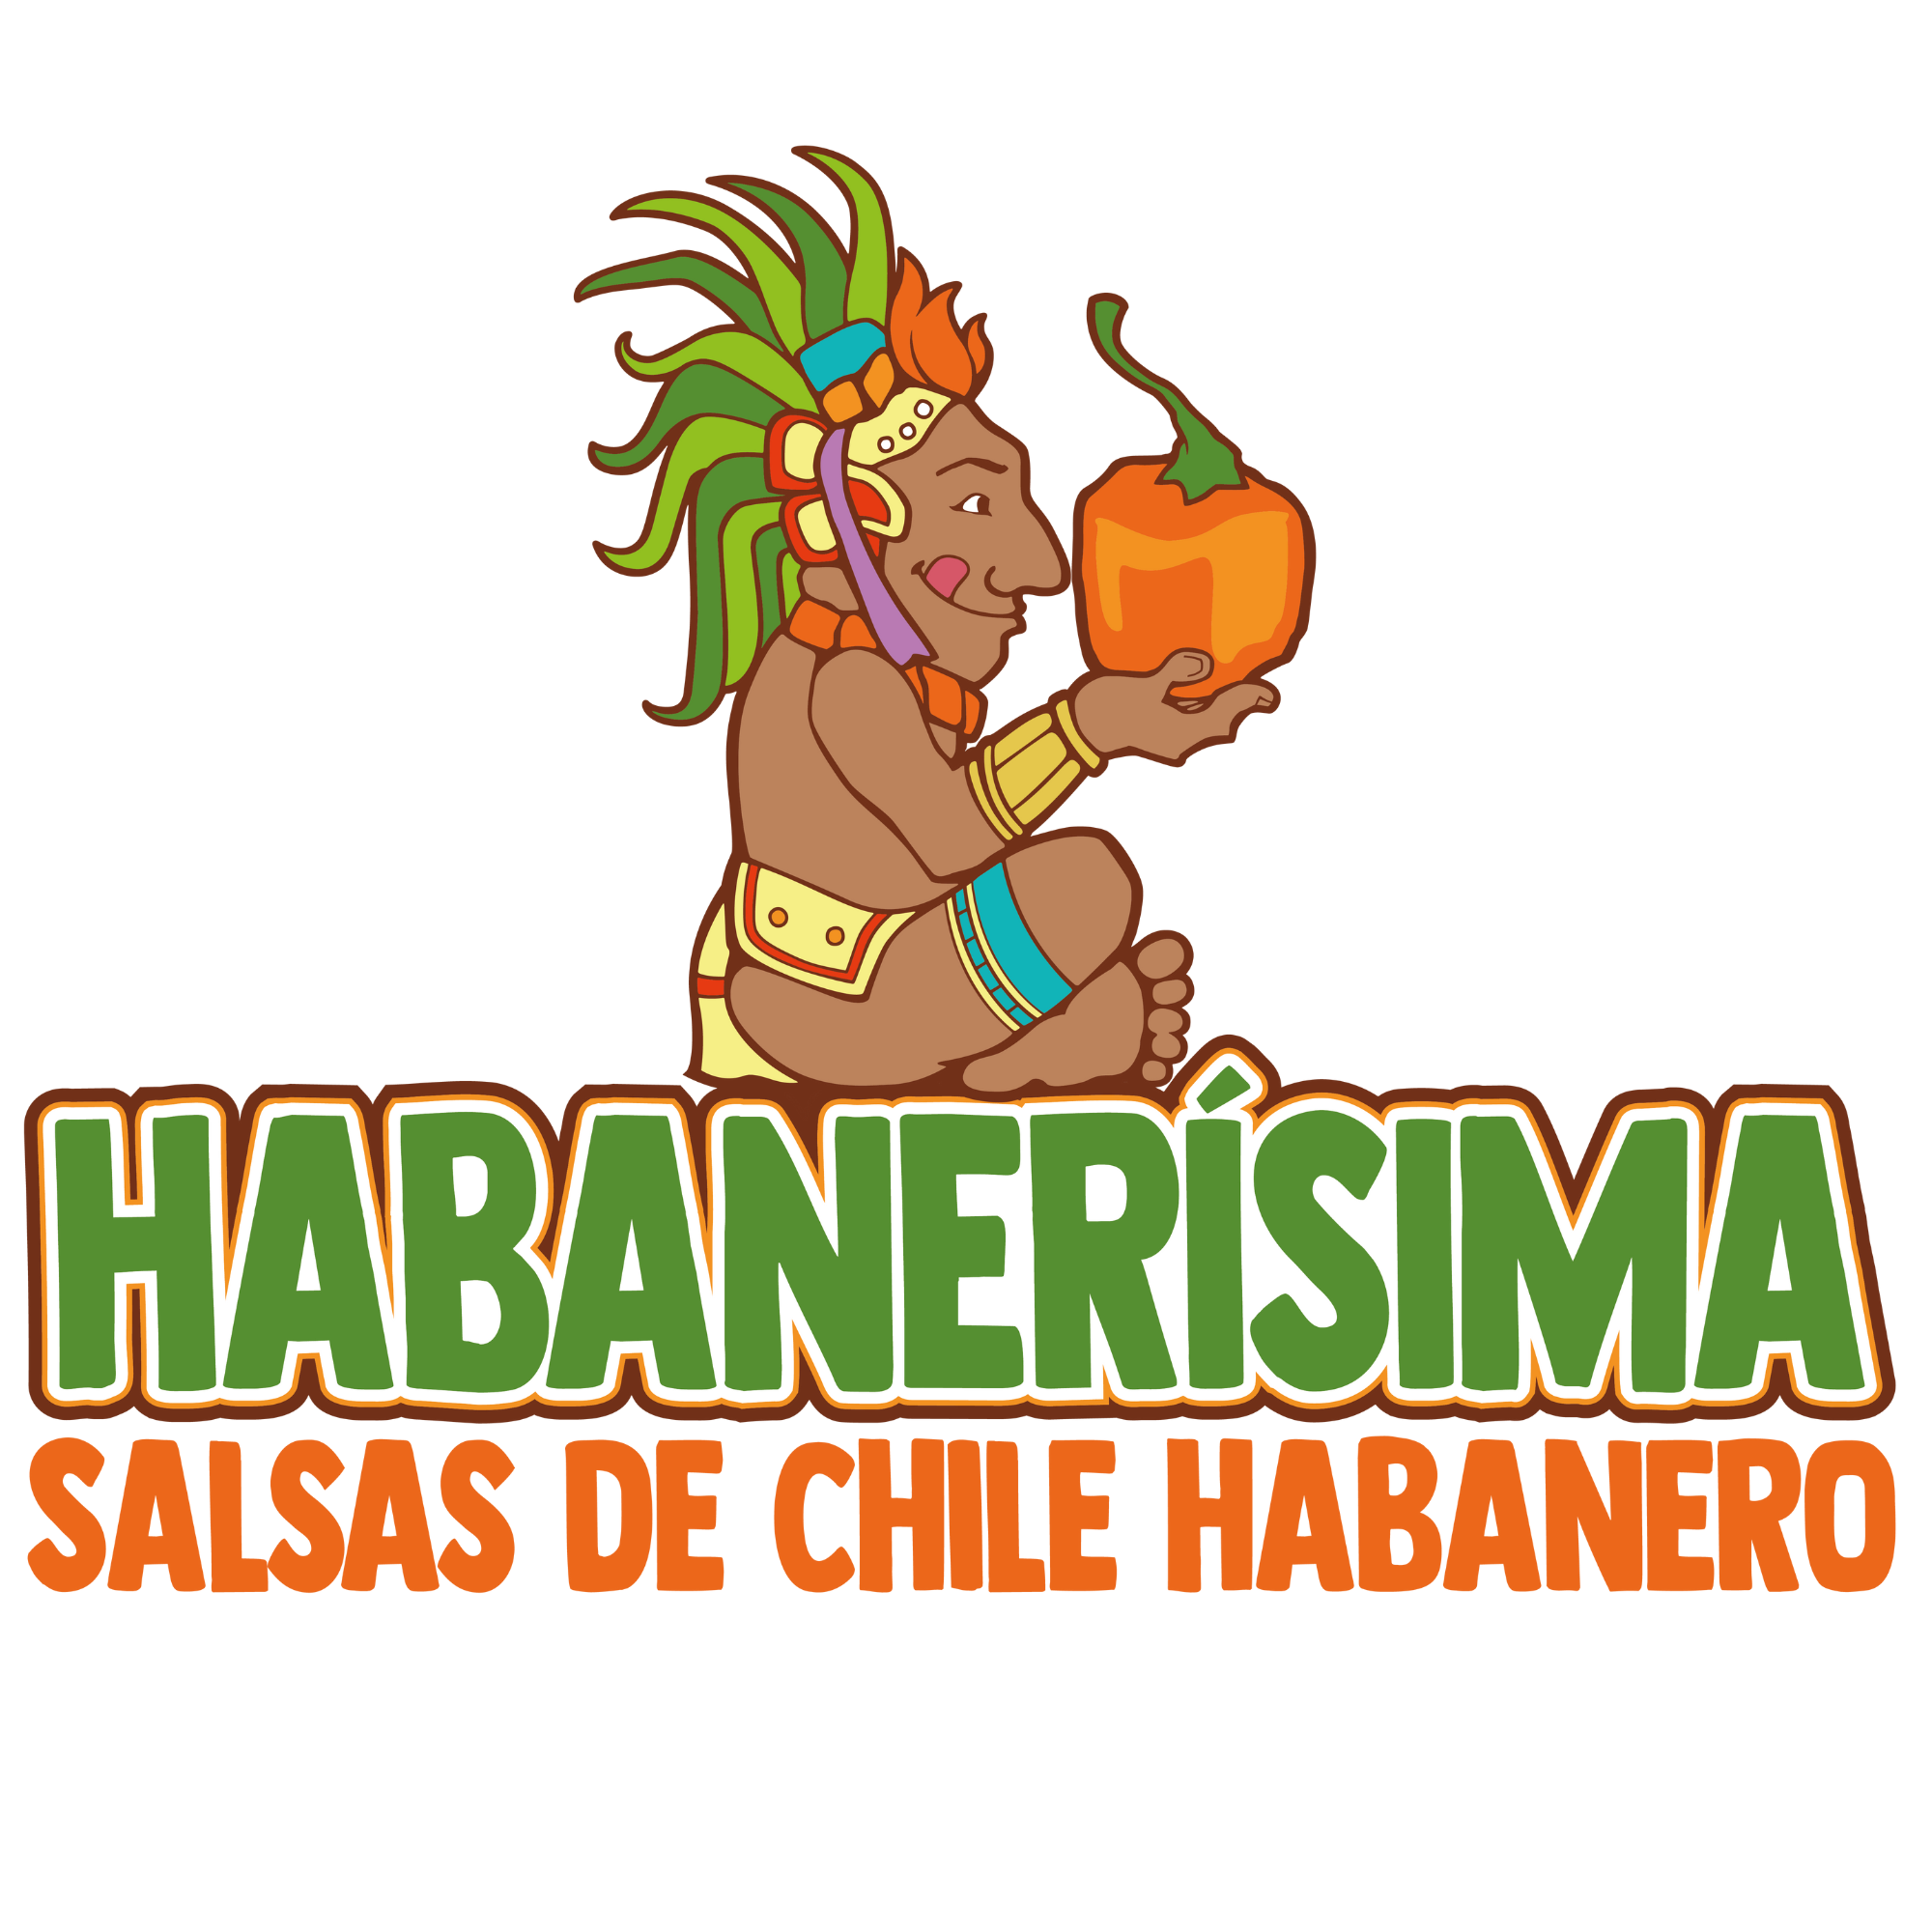 1 Caja de Salsa De Chile Habanero Habanerísima Asada De 1 Lt